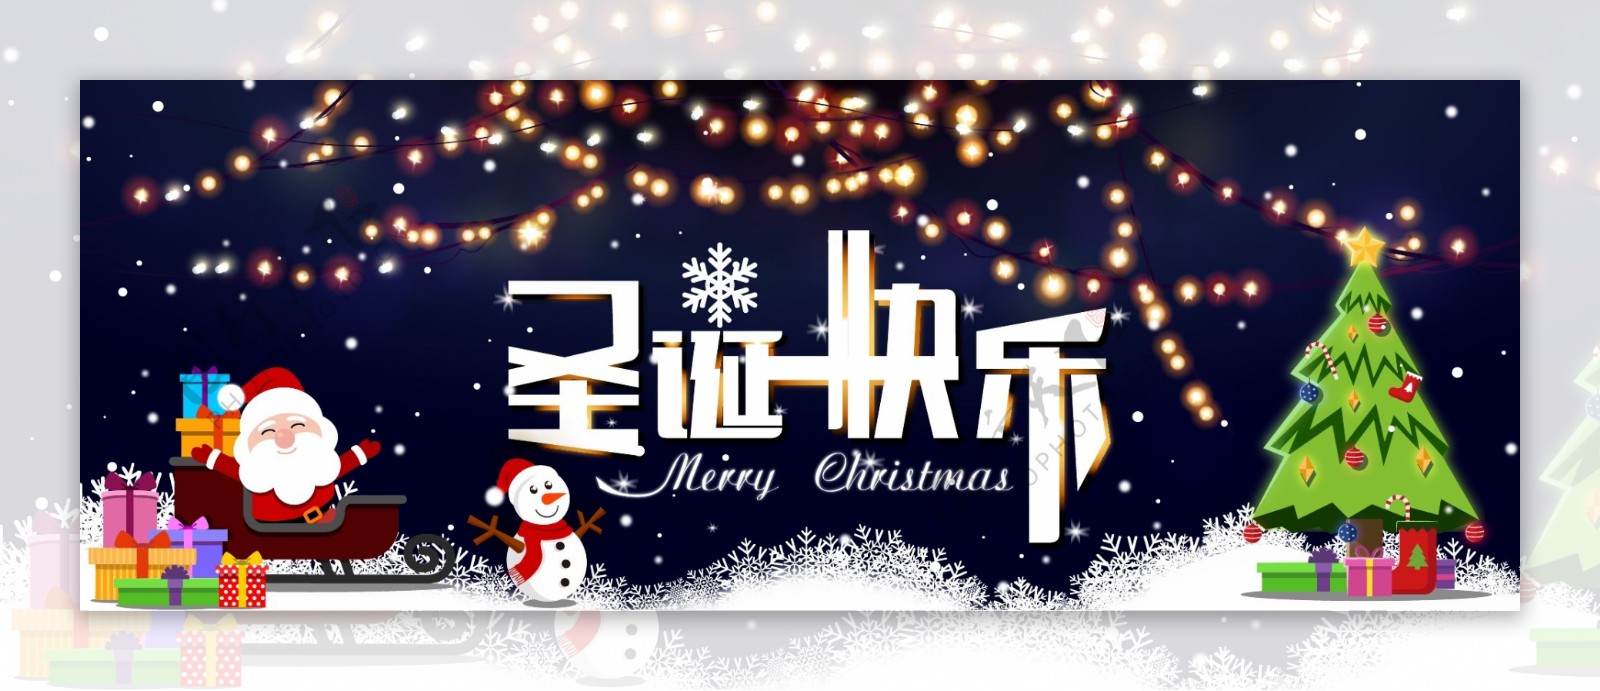 圣诞节雪人圣诞老人礼物圣诞树灯光宣传海报